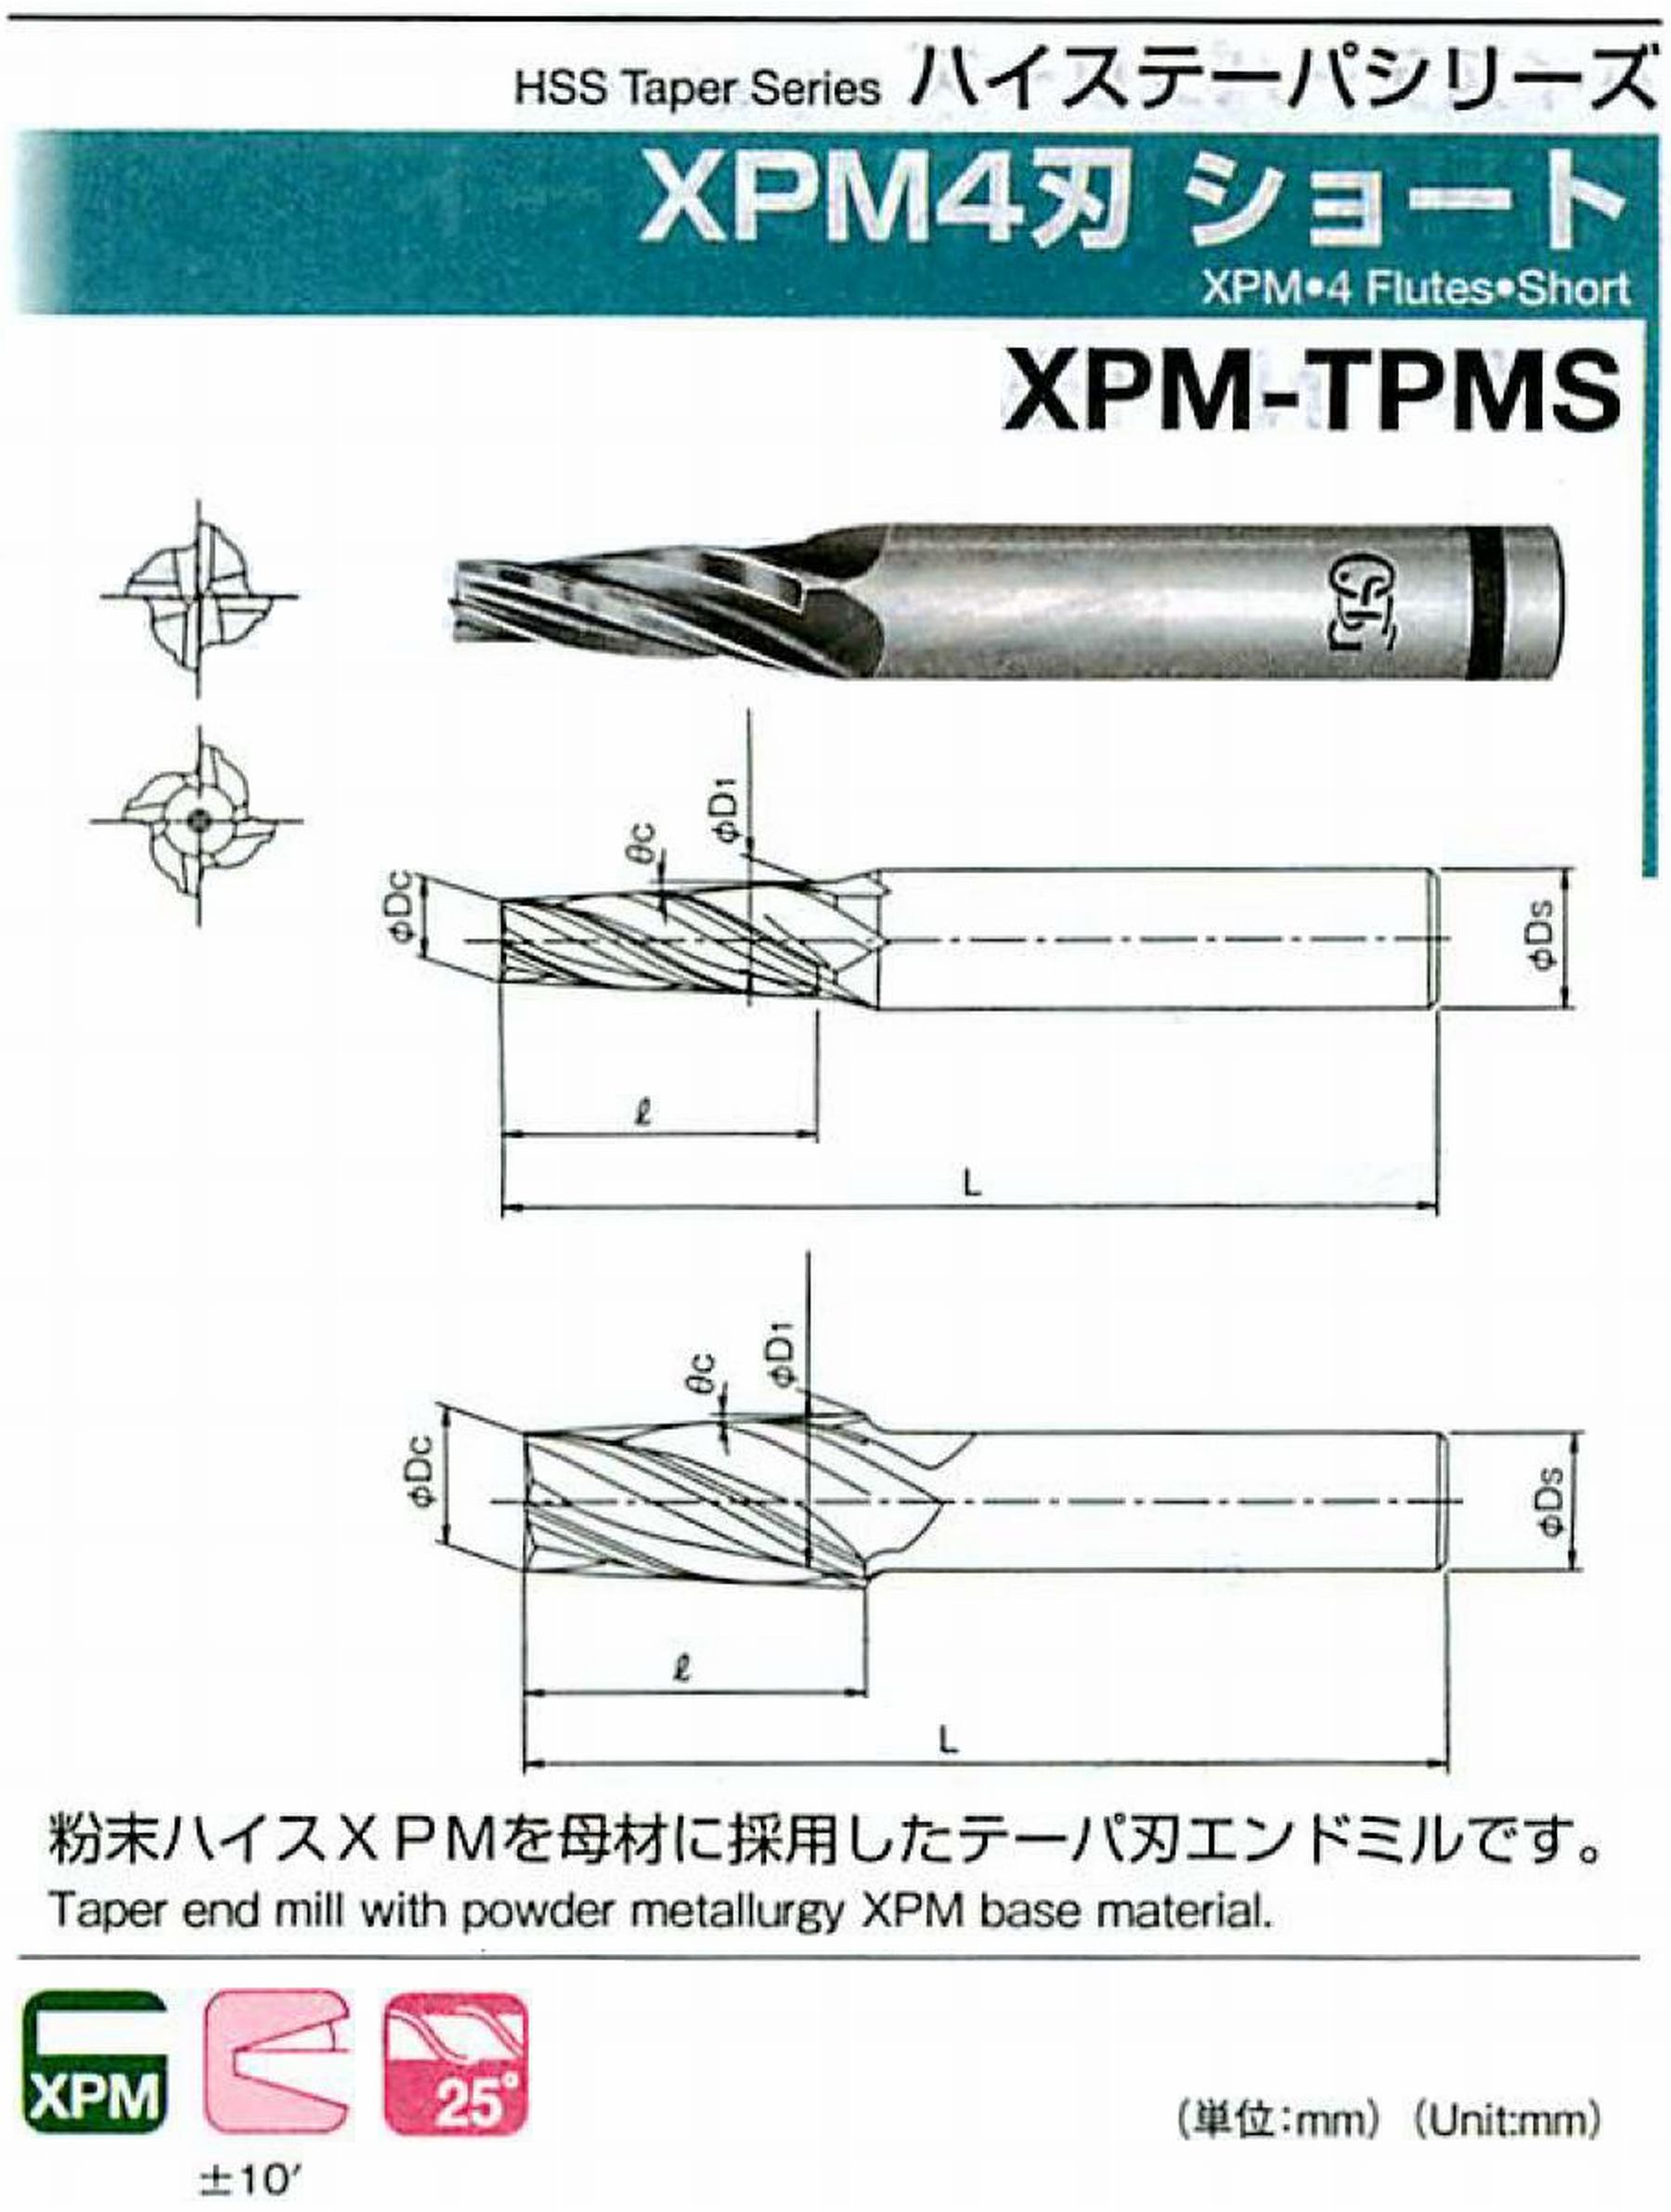 オーエスジー/OSG XPM4刃 ショート XPM-TPMS 外径×刃部テーパ半角2.5×0.5°全長54 刃長10 シャンク径6mm 大端径2.67